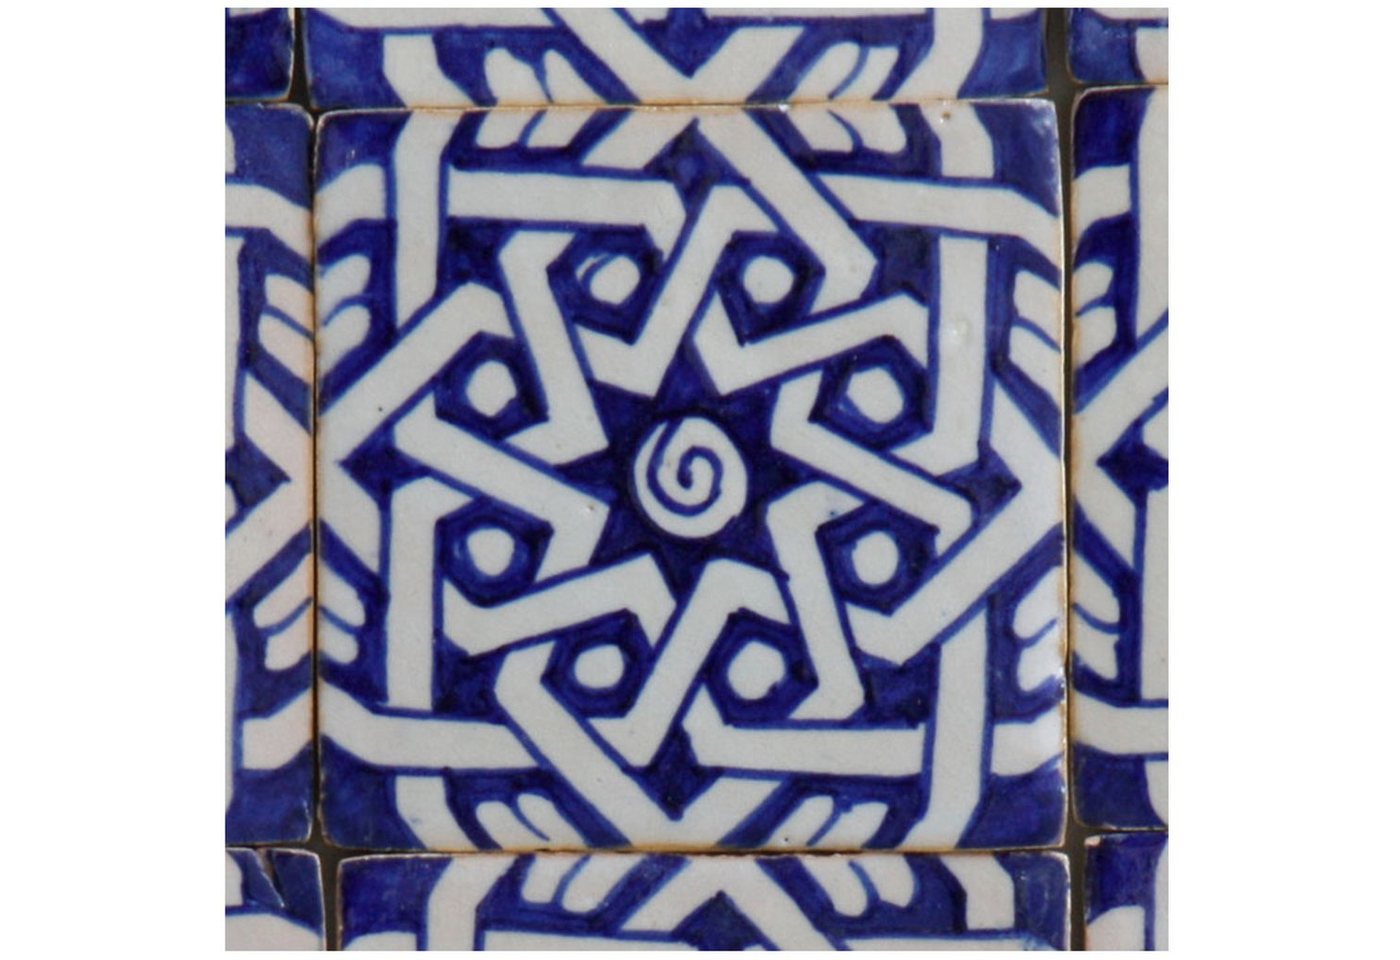 Casa Moro Ton Wandfliese Marokkanische Keramikfliese Daima, handbemalte Fliese FL7140, Blau und Weiß, Kunsthandwerk aus Marokko von Casa Moro